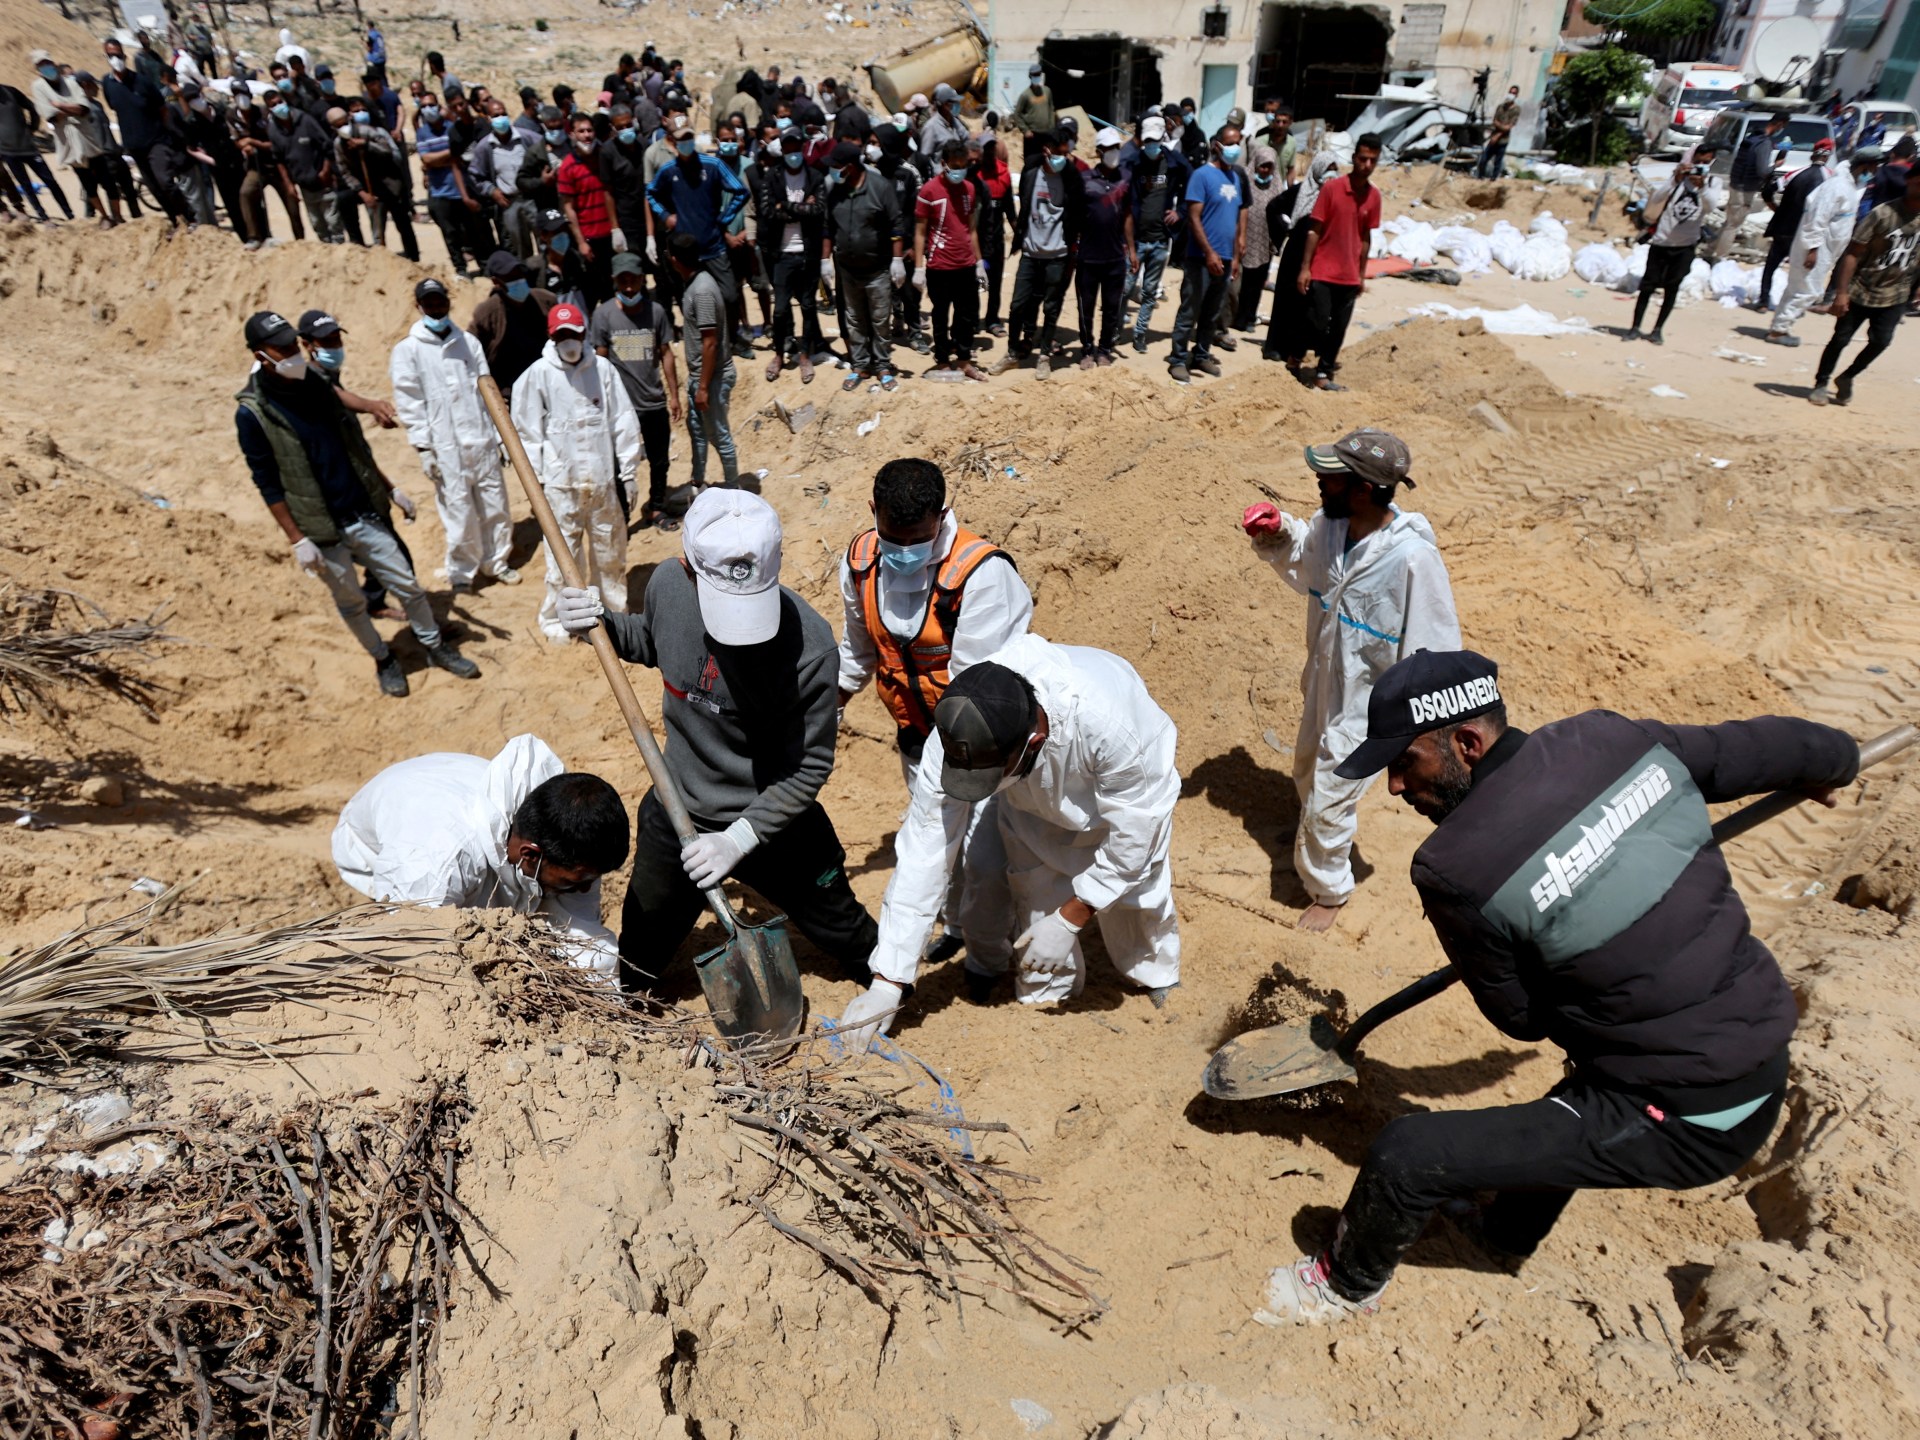 مطالب فلسطينية بتحقيق دولي "فوري" في المقابر الجماعية بغزة